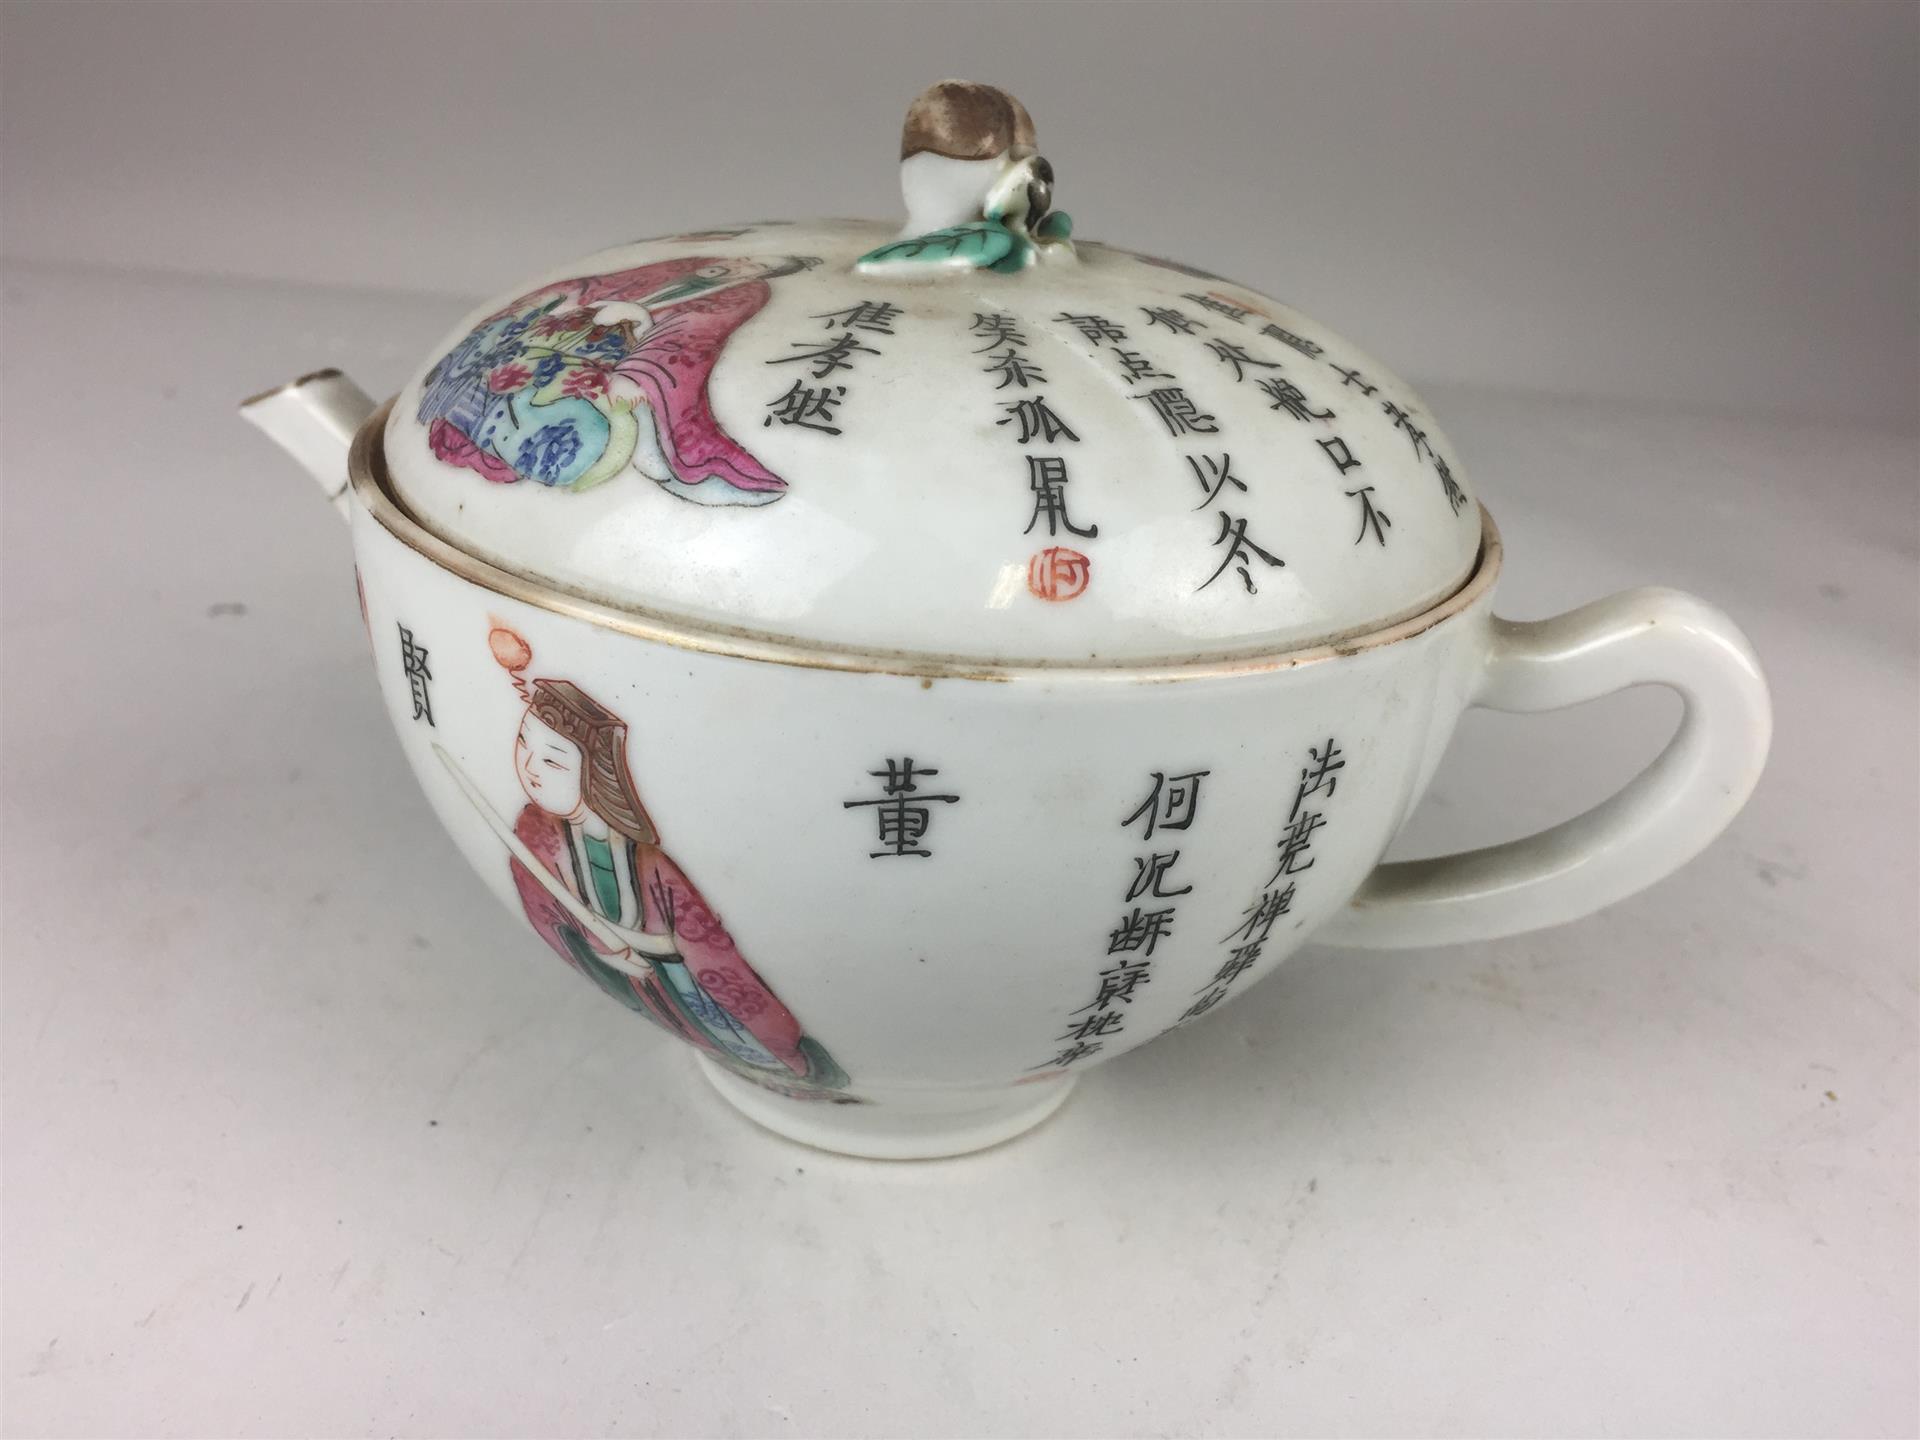 CHINE, probablement période Tongzhi, fin XIXe. Petite théière de forme circulaire en porcelaine. (...)